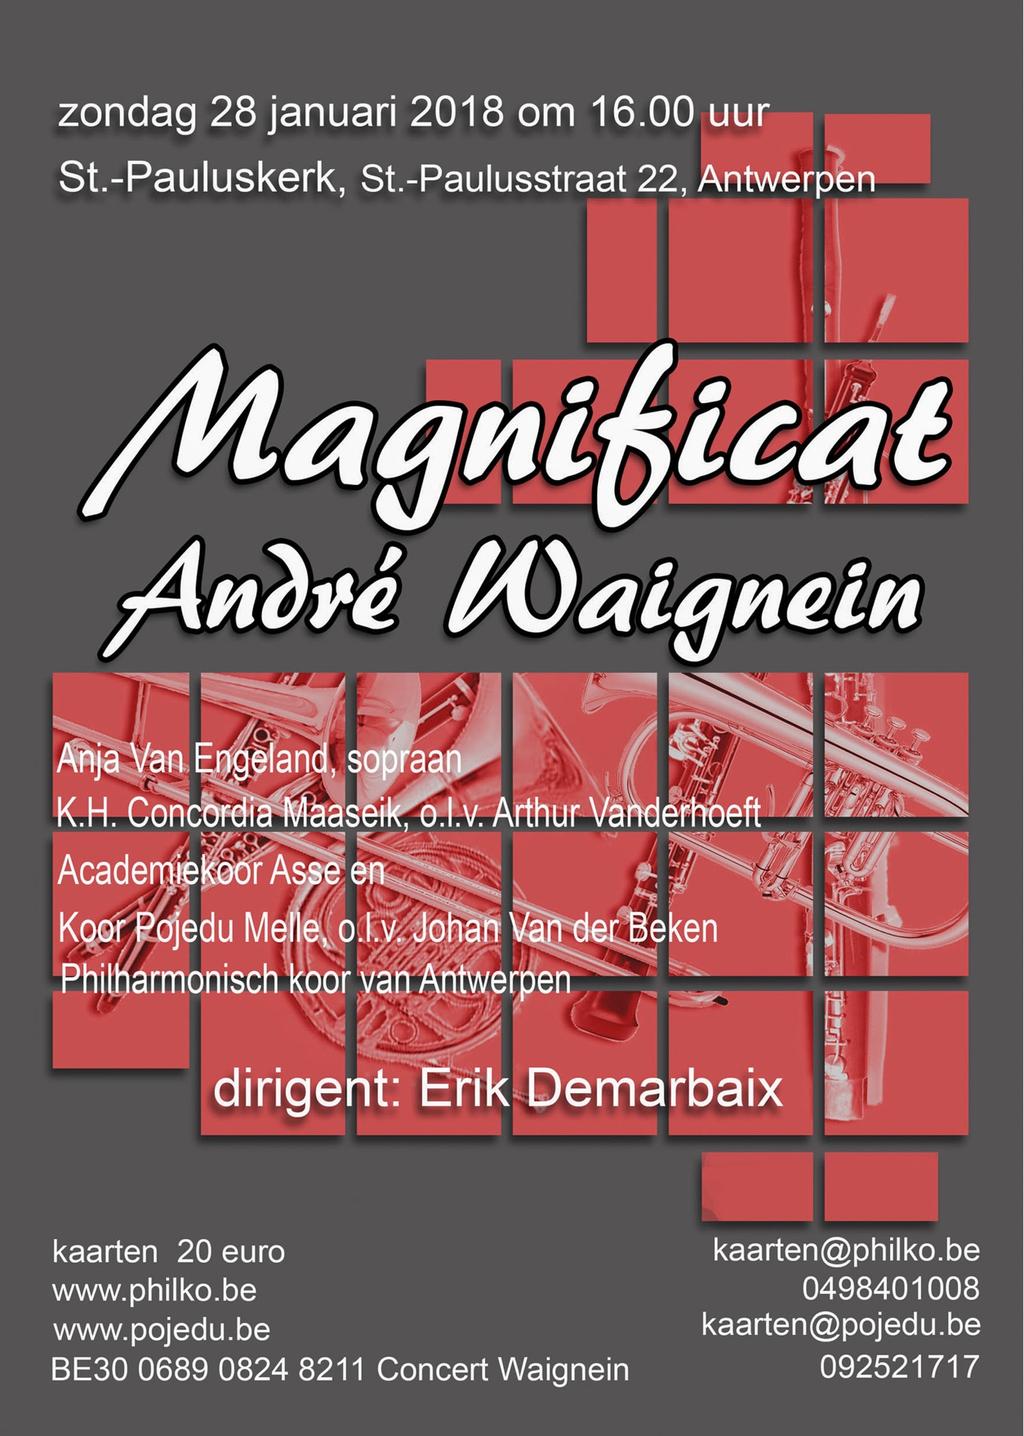 Het Magnificat van André Waignein wordt voor de eerste maal integraal uitgevoerd in België.